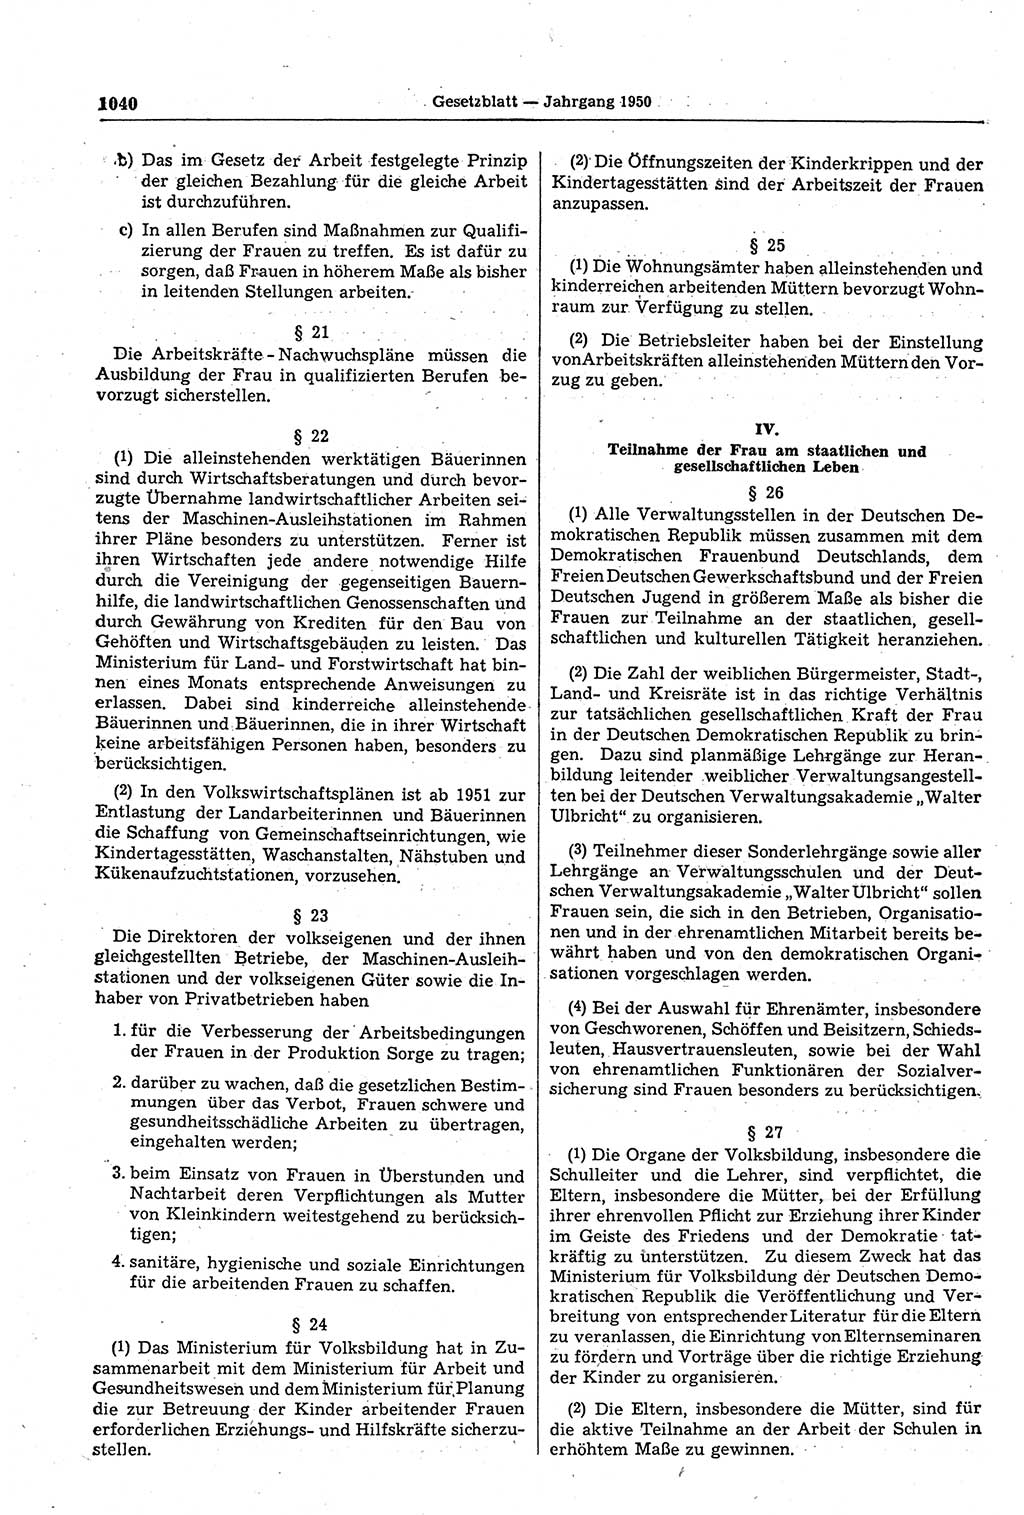 Gesetzblatt (GBl.) der Deutschen Demokratischen Republik (DDR) 1950, Seite 1040 (GBl. DDR 1950, S. 1040)